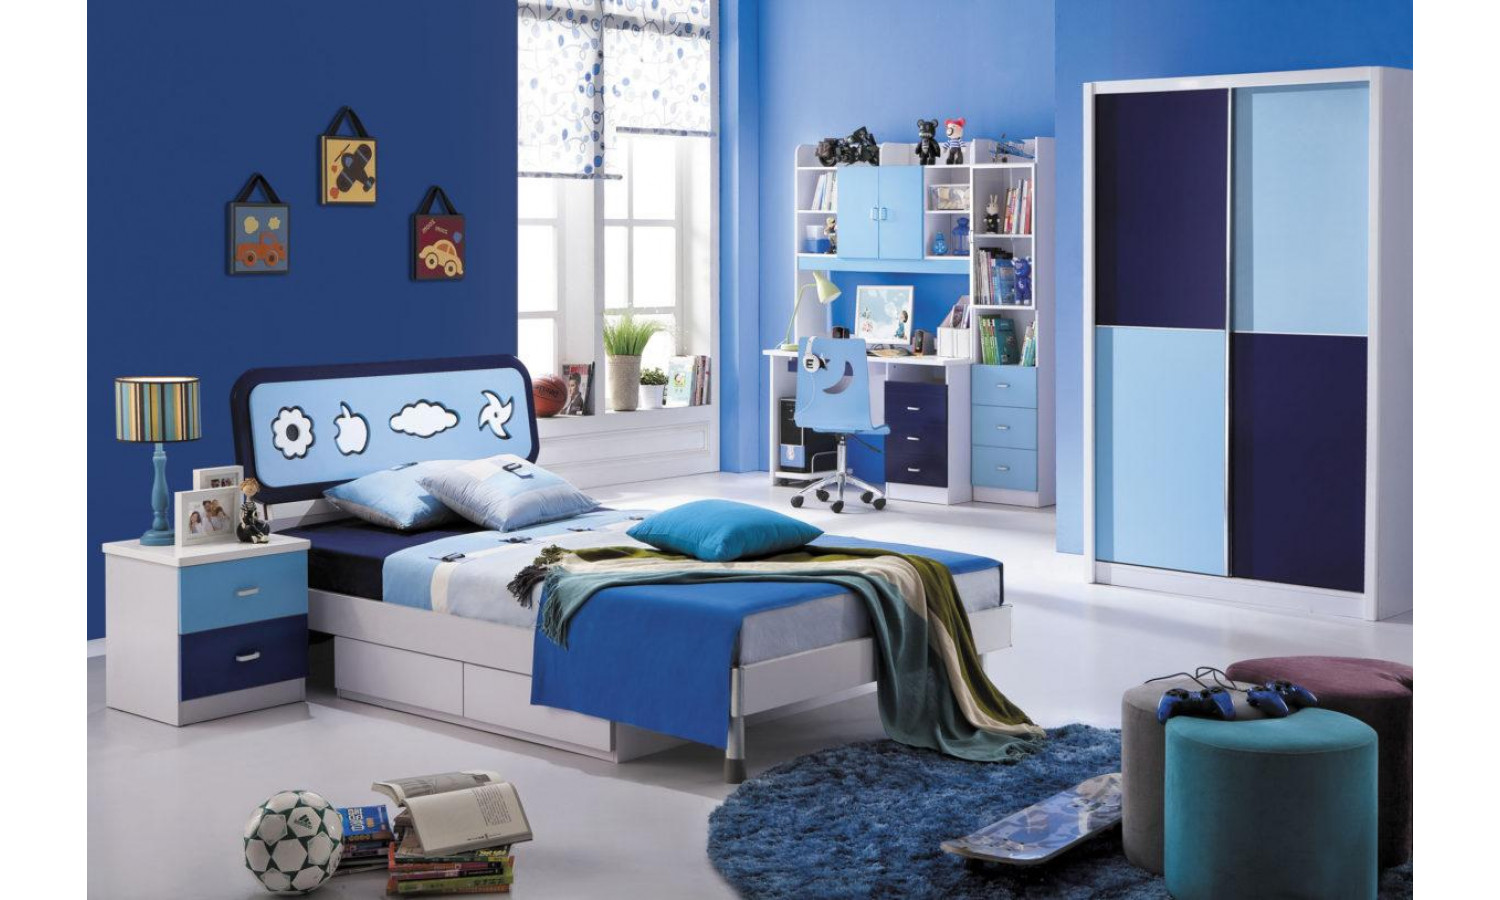 Спальня MK-4622-BL (кровать/МК-4600, тумбочка/МК-4601, шкаф/МК-4602) 0х0х0 Синий/Белый